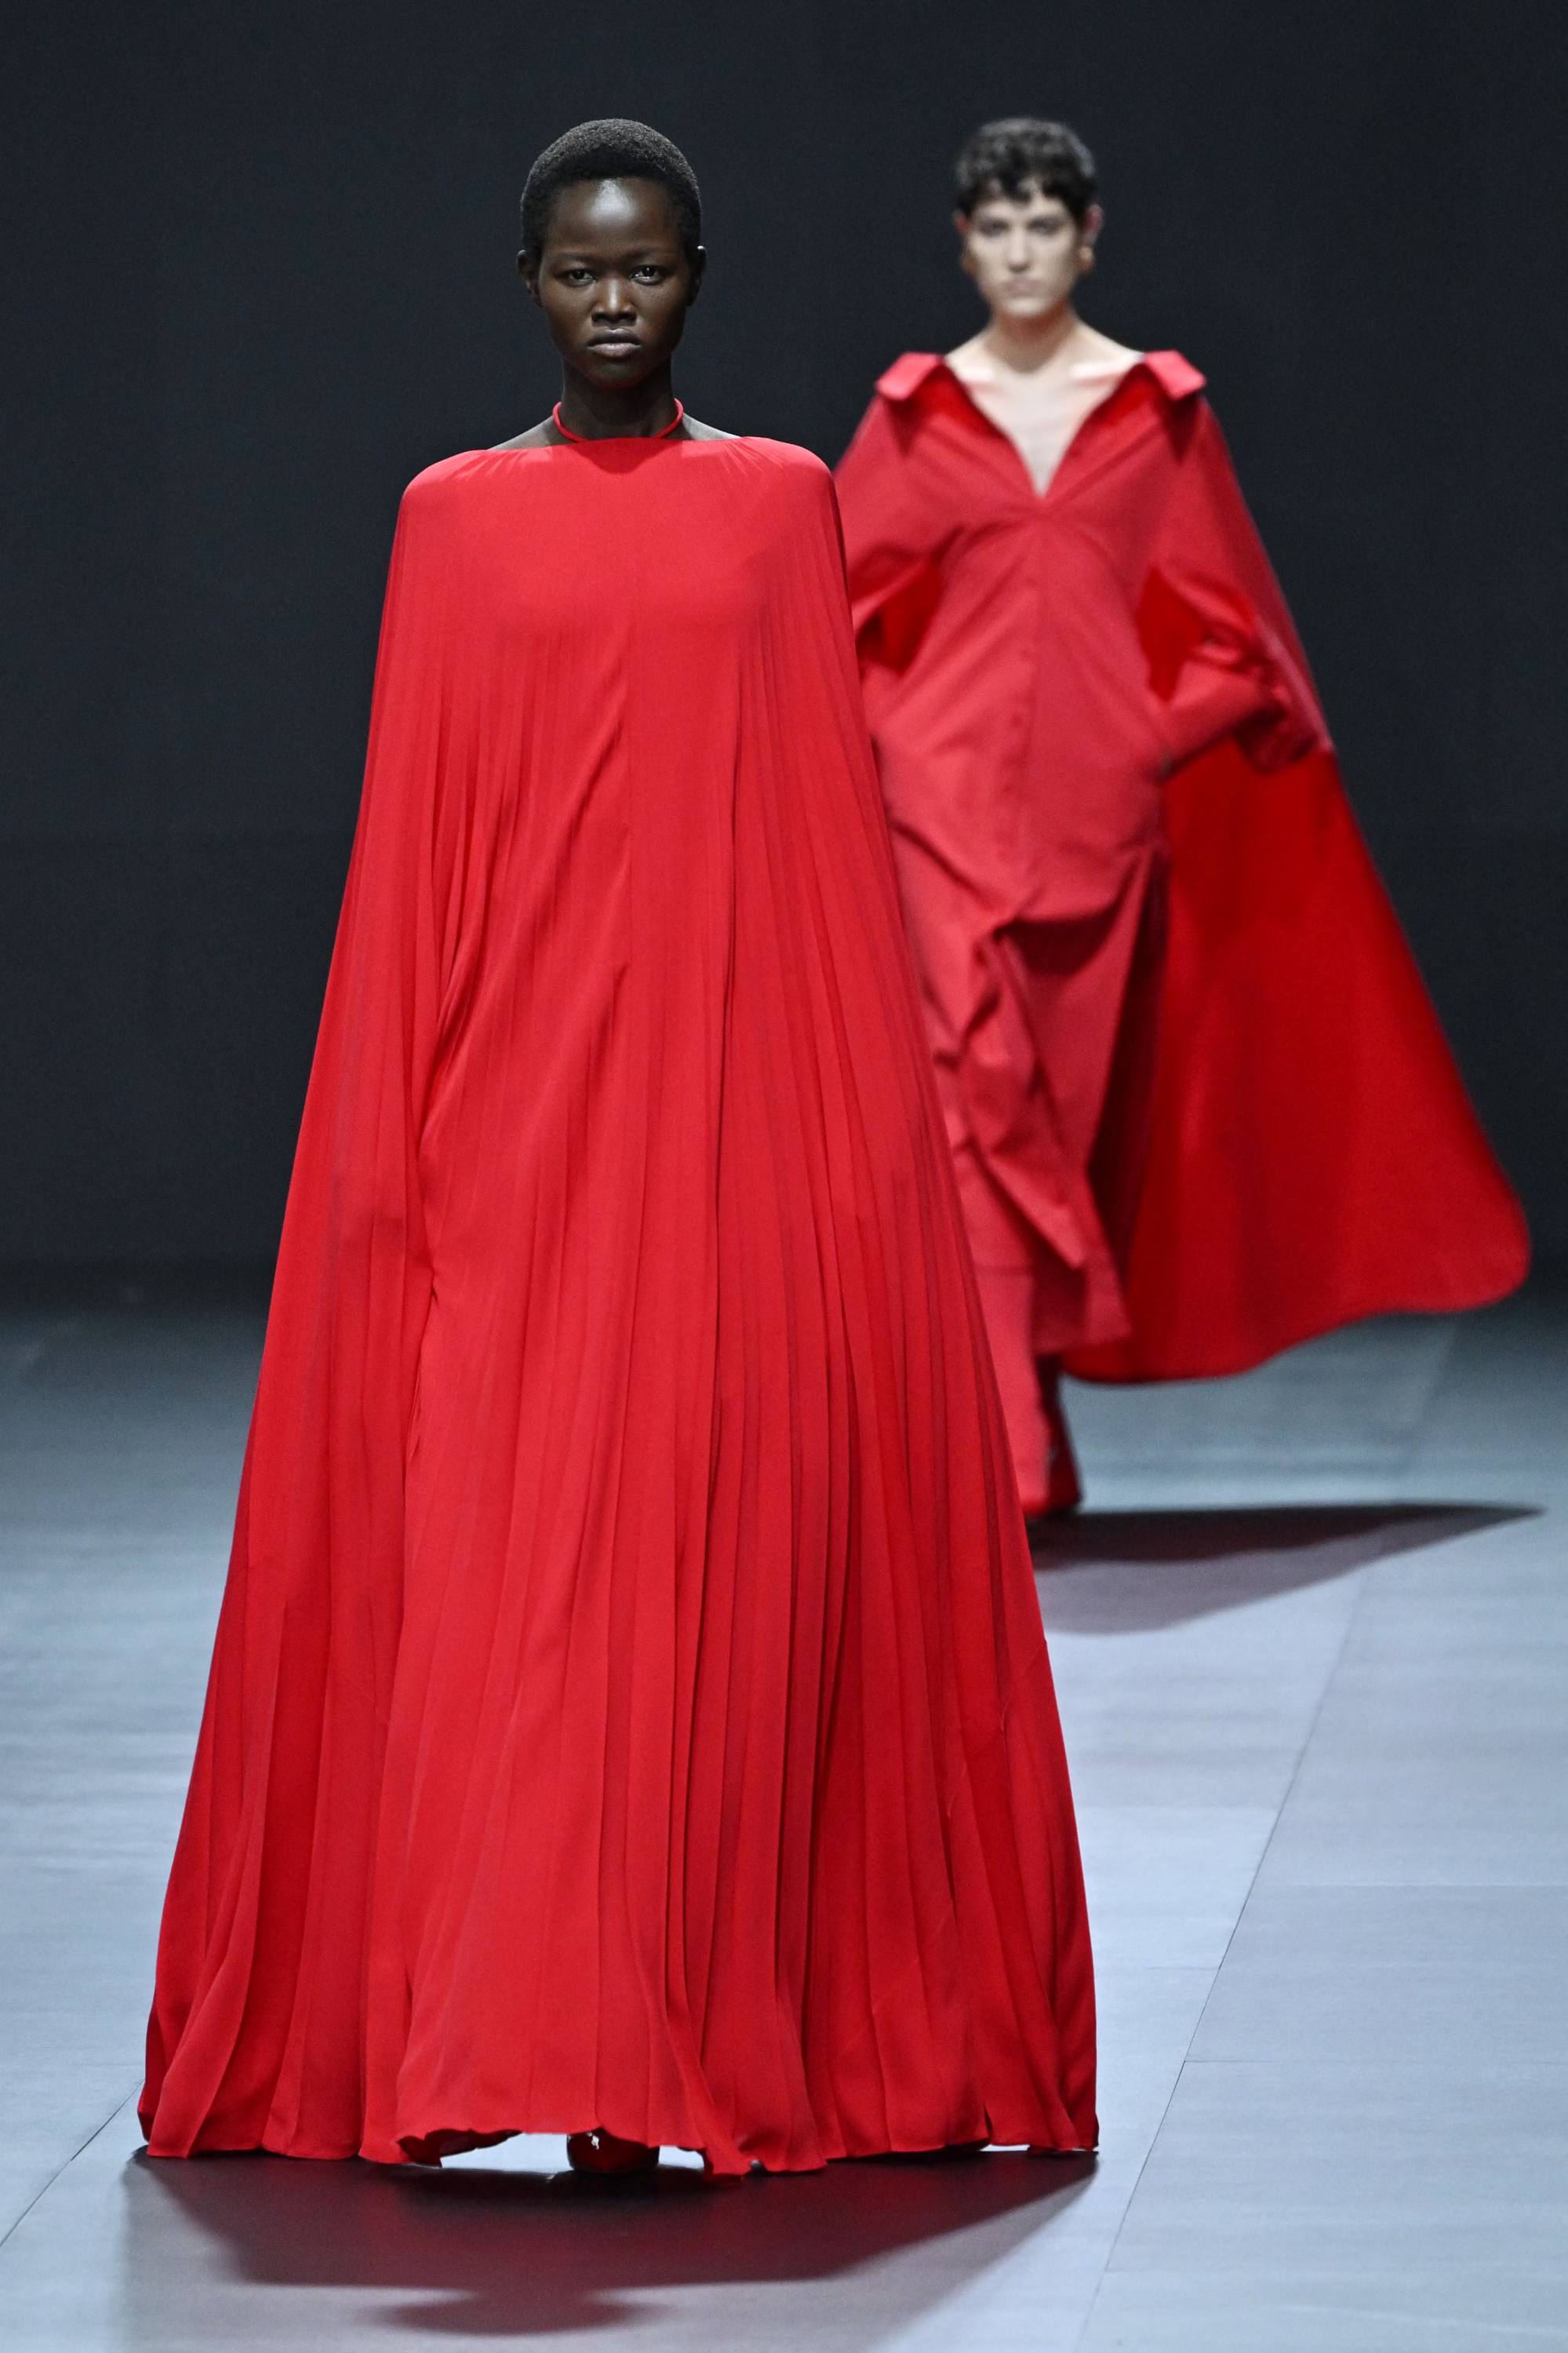 Lace maxi dress Red Valentino Garavani Multicolour size 10 UK in